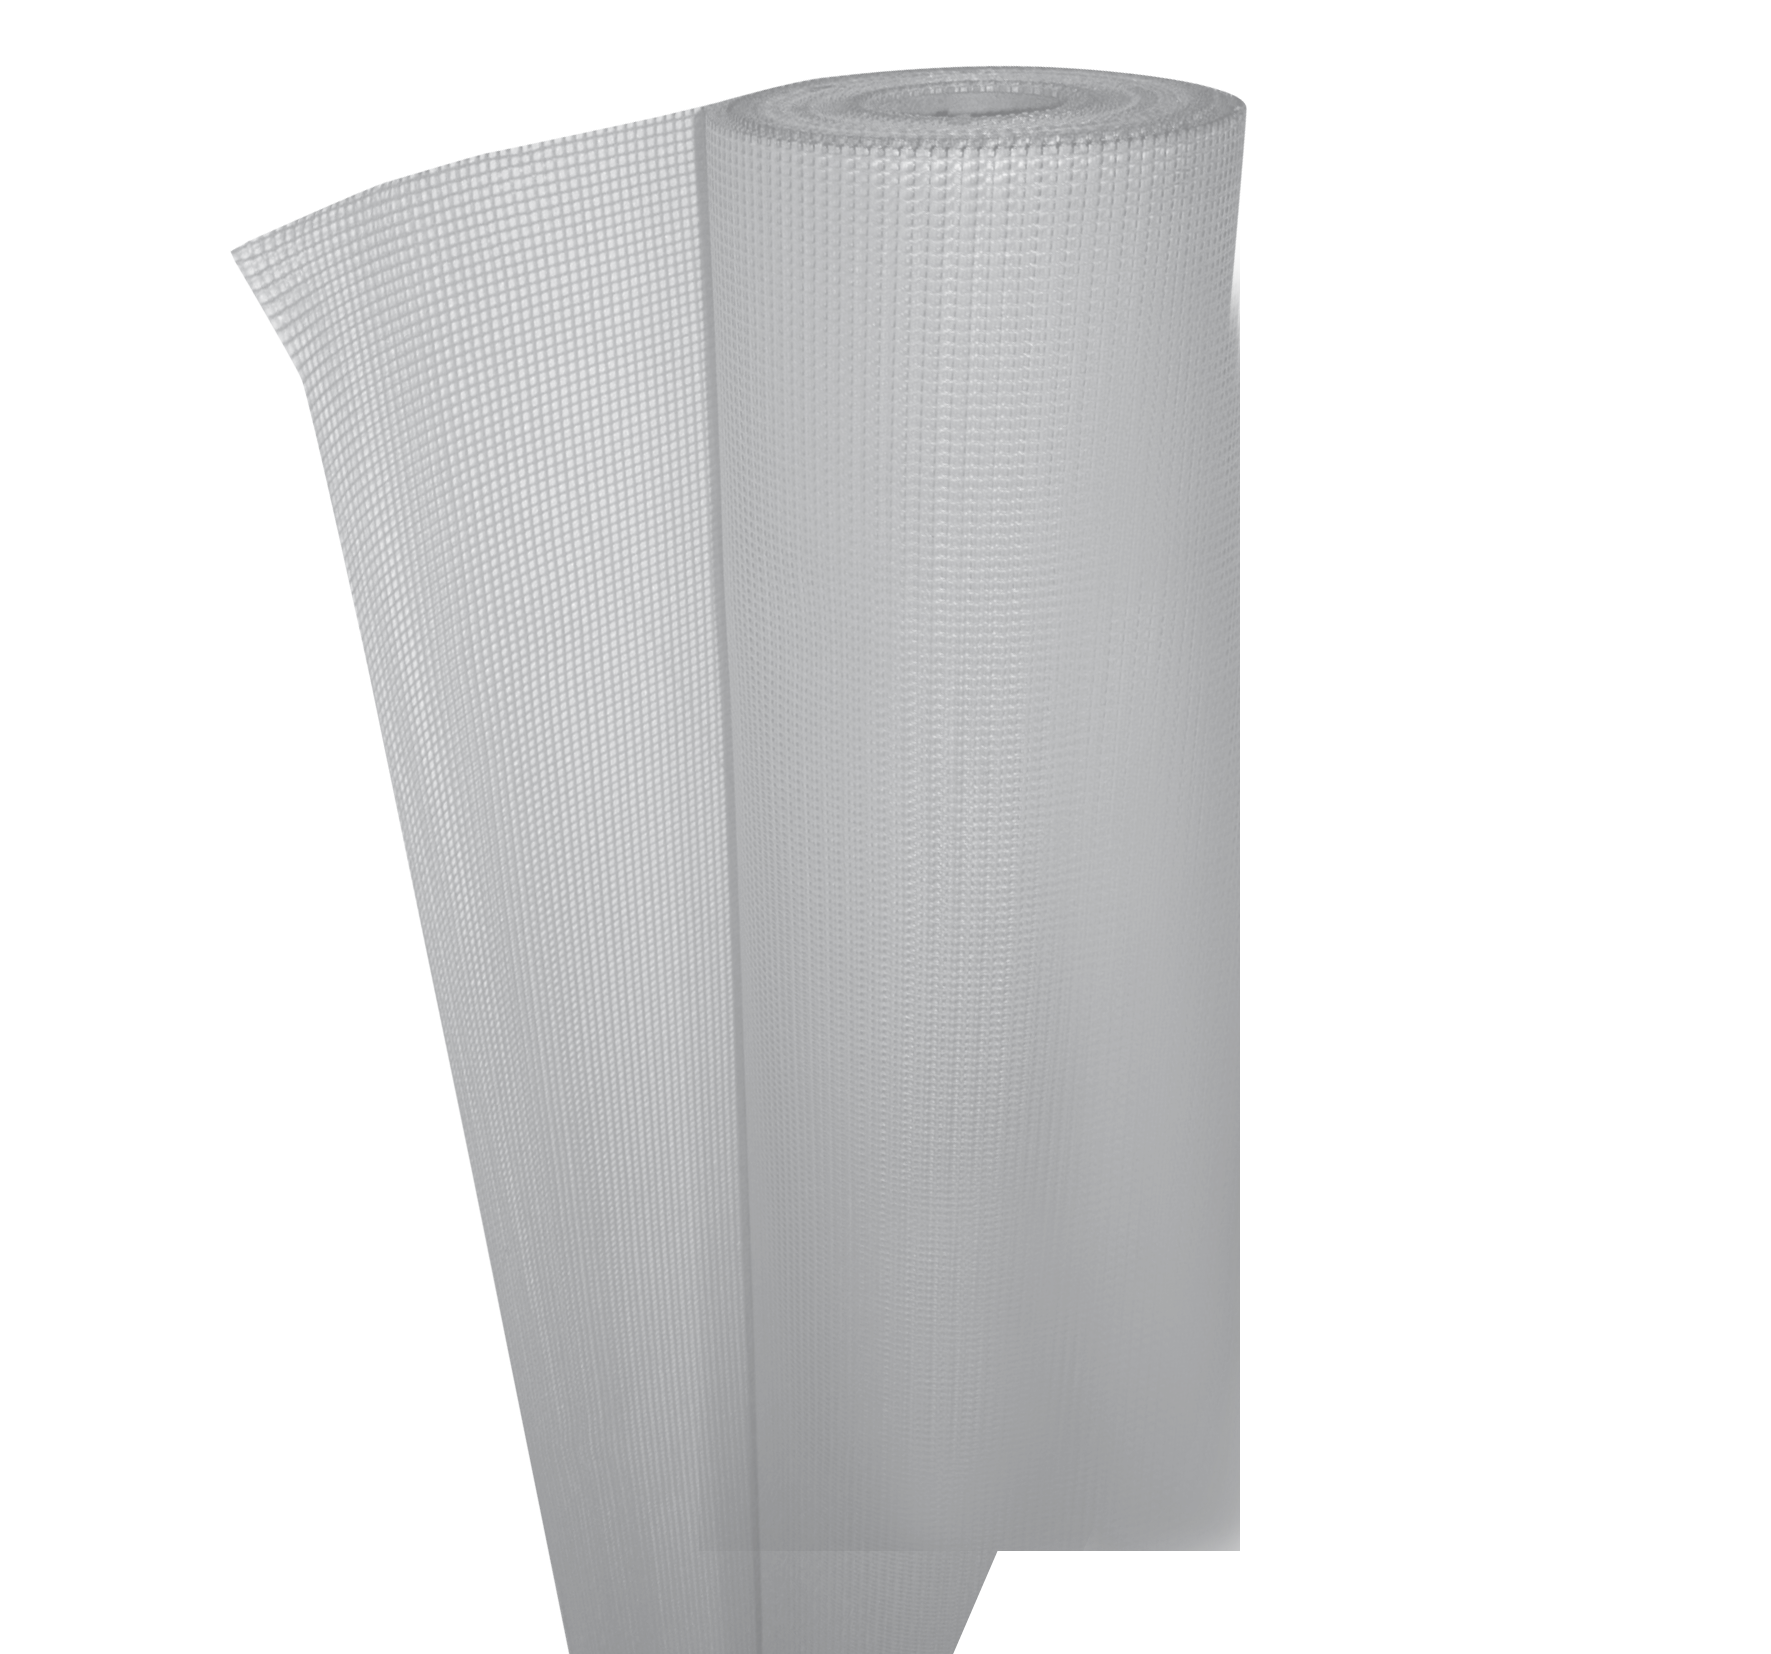 FASSANET 110: Malla de armadura para enfoscados de fibra de vidrio resistente a los álcalis de color blanco con masa de 110 g/m²